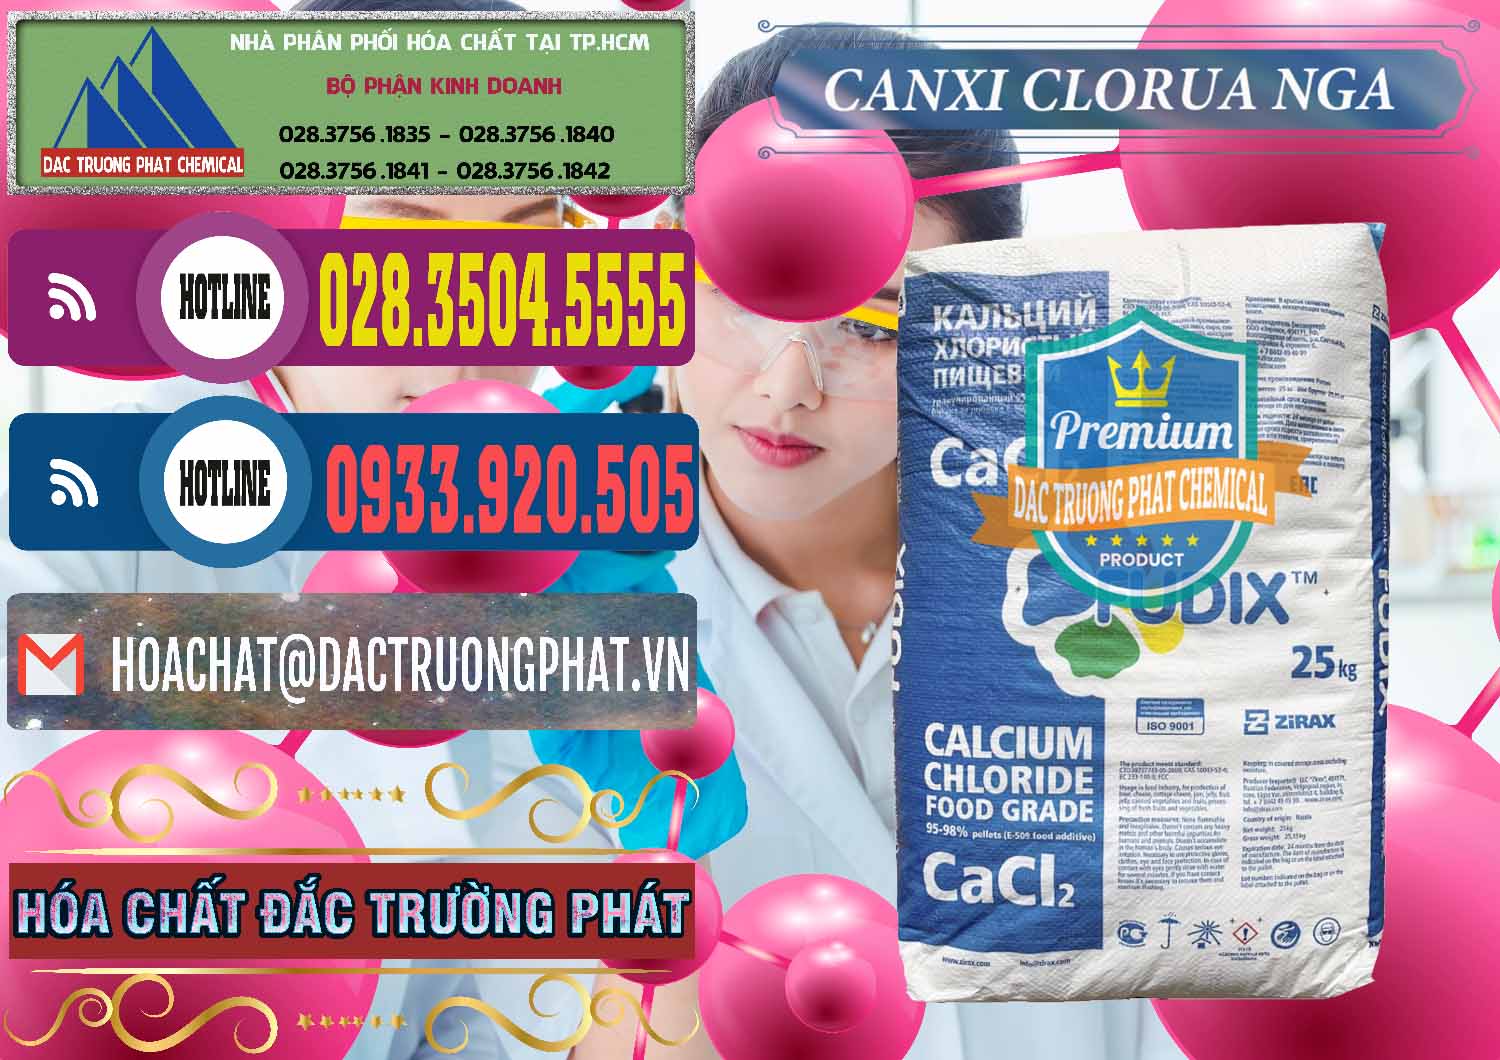 Nơi chuyên bán - cung cấp CaCl2 – Canxi Clorua Nga Russia - 0430 - Công ty chuyên phân phối ( cung ứng ) hóa chất tại TP.HCM - muabanhoachat.com.vn